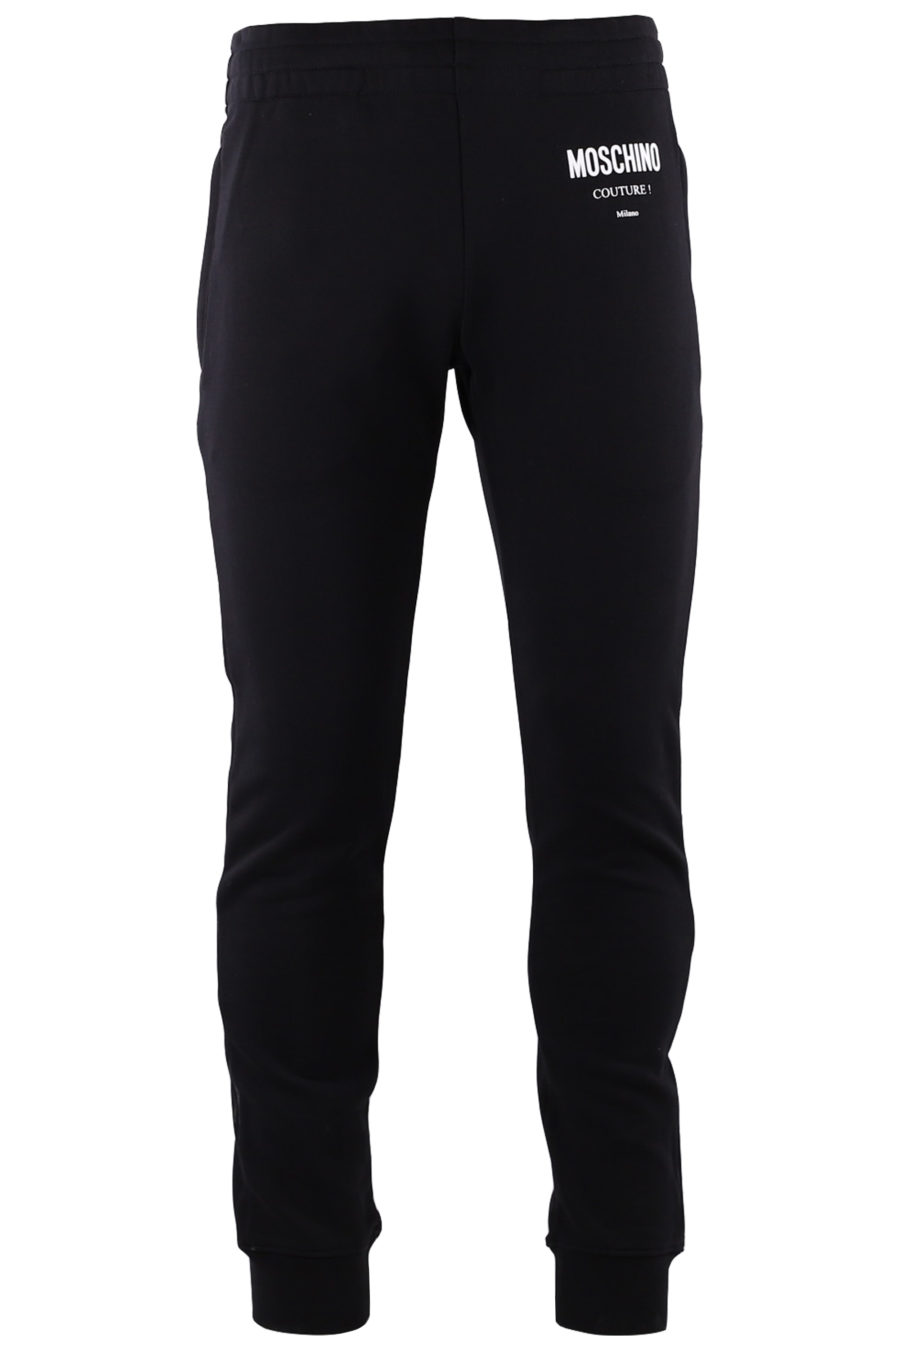 Pantalón de chándal negro con logo grande blanco - IMG 9194